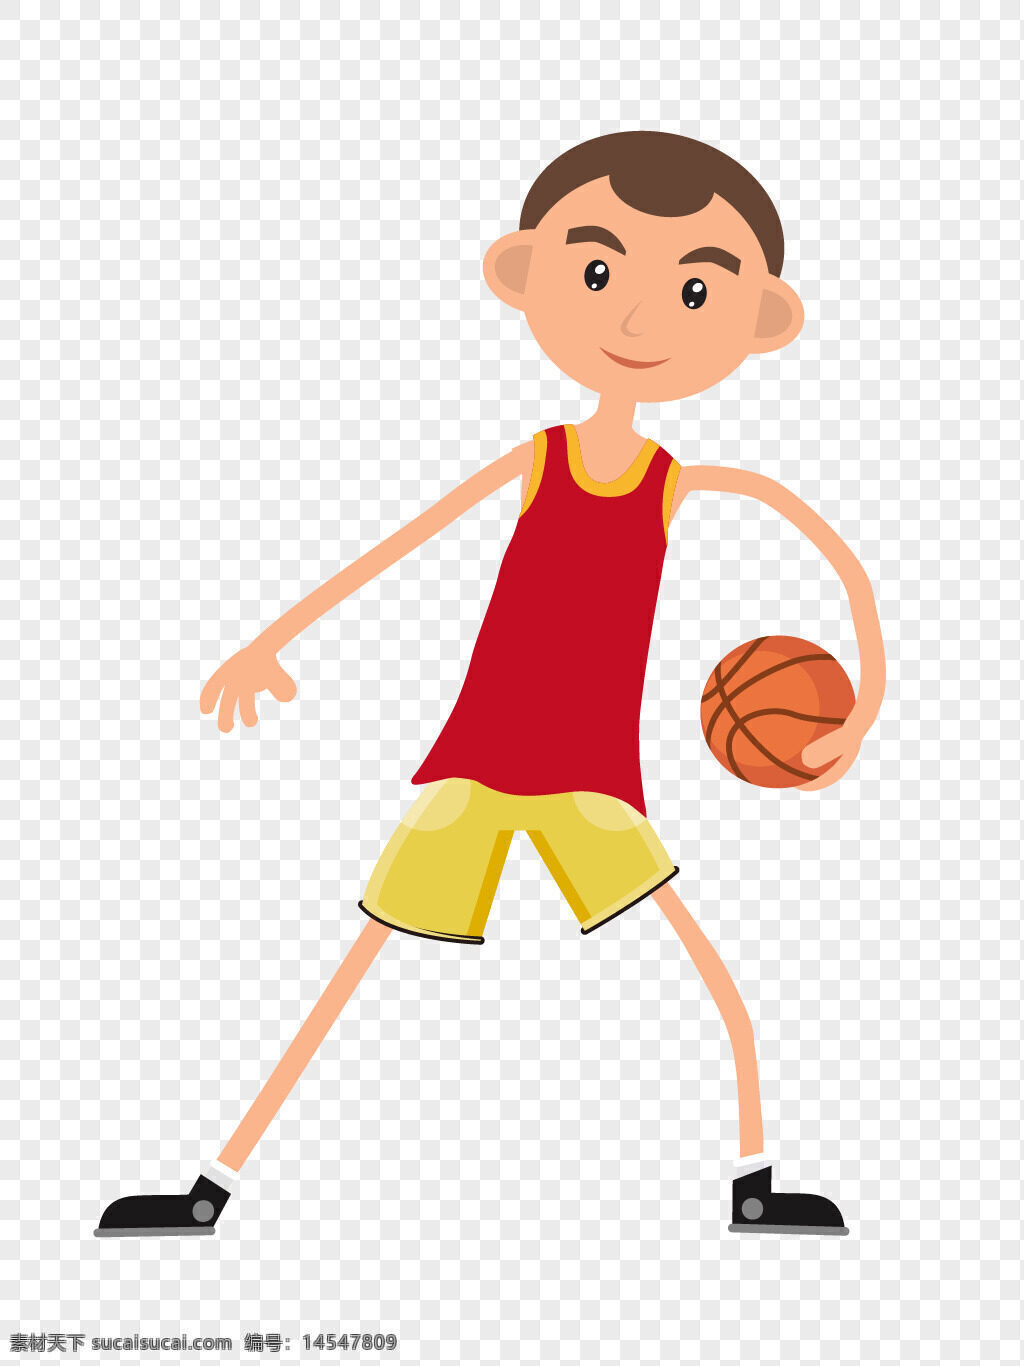 矢量 手绘 运球 打篮球 运动员 矢量手绘 运球打篮球 矢量手绘运球打篮球运动员